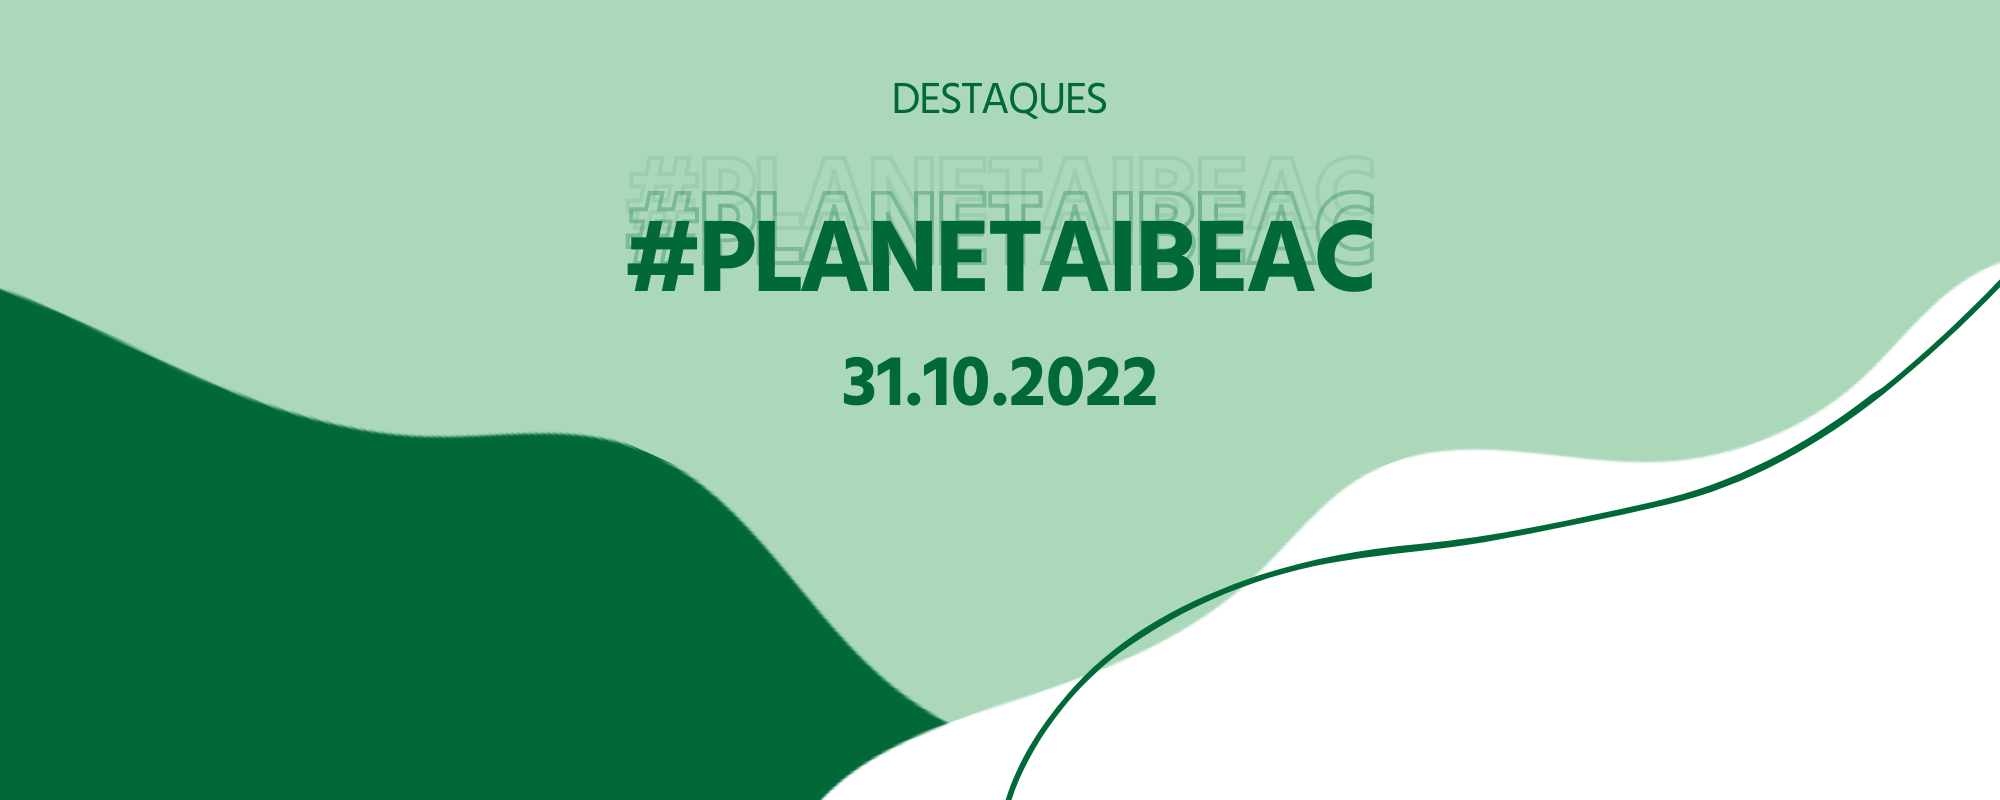 Destaques #PlanetaIbeac 31.10.2022